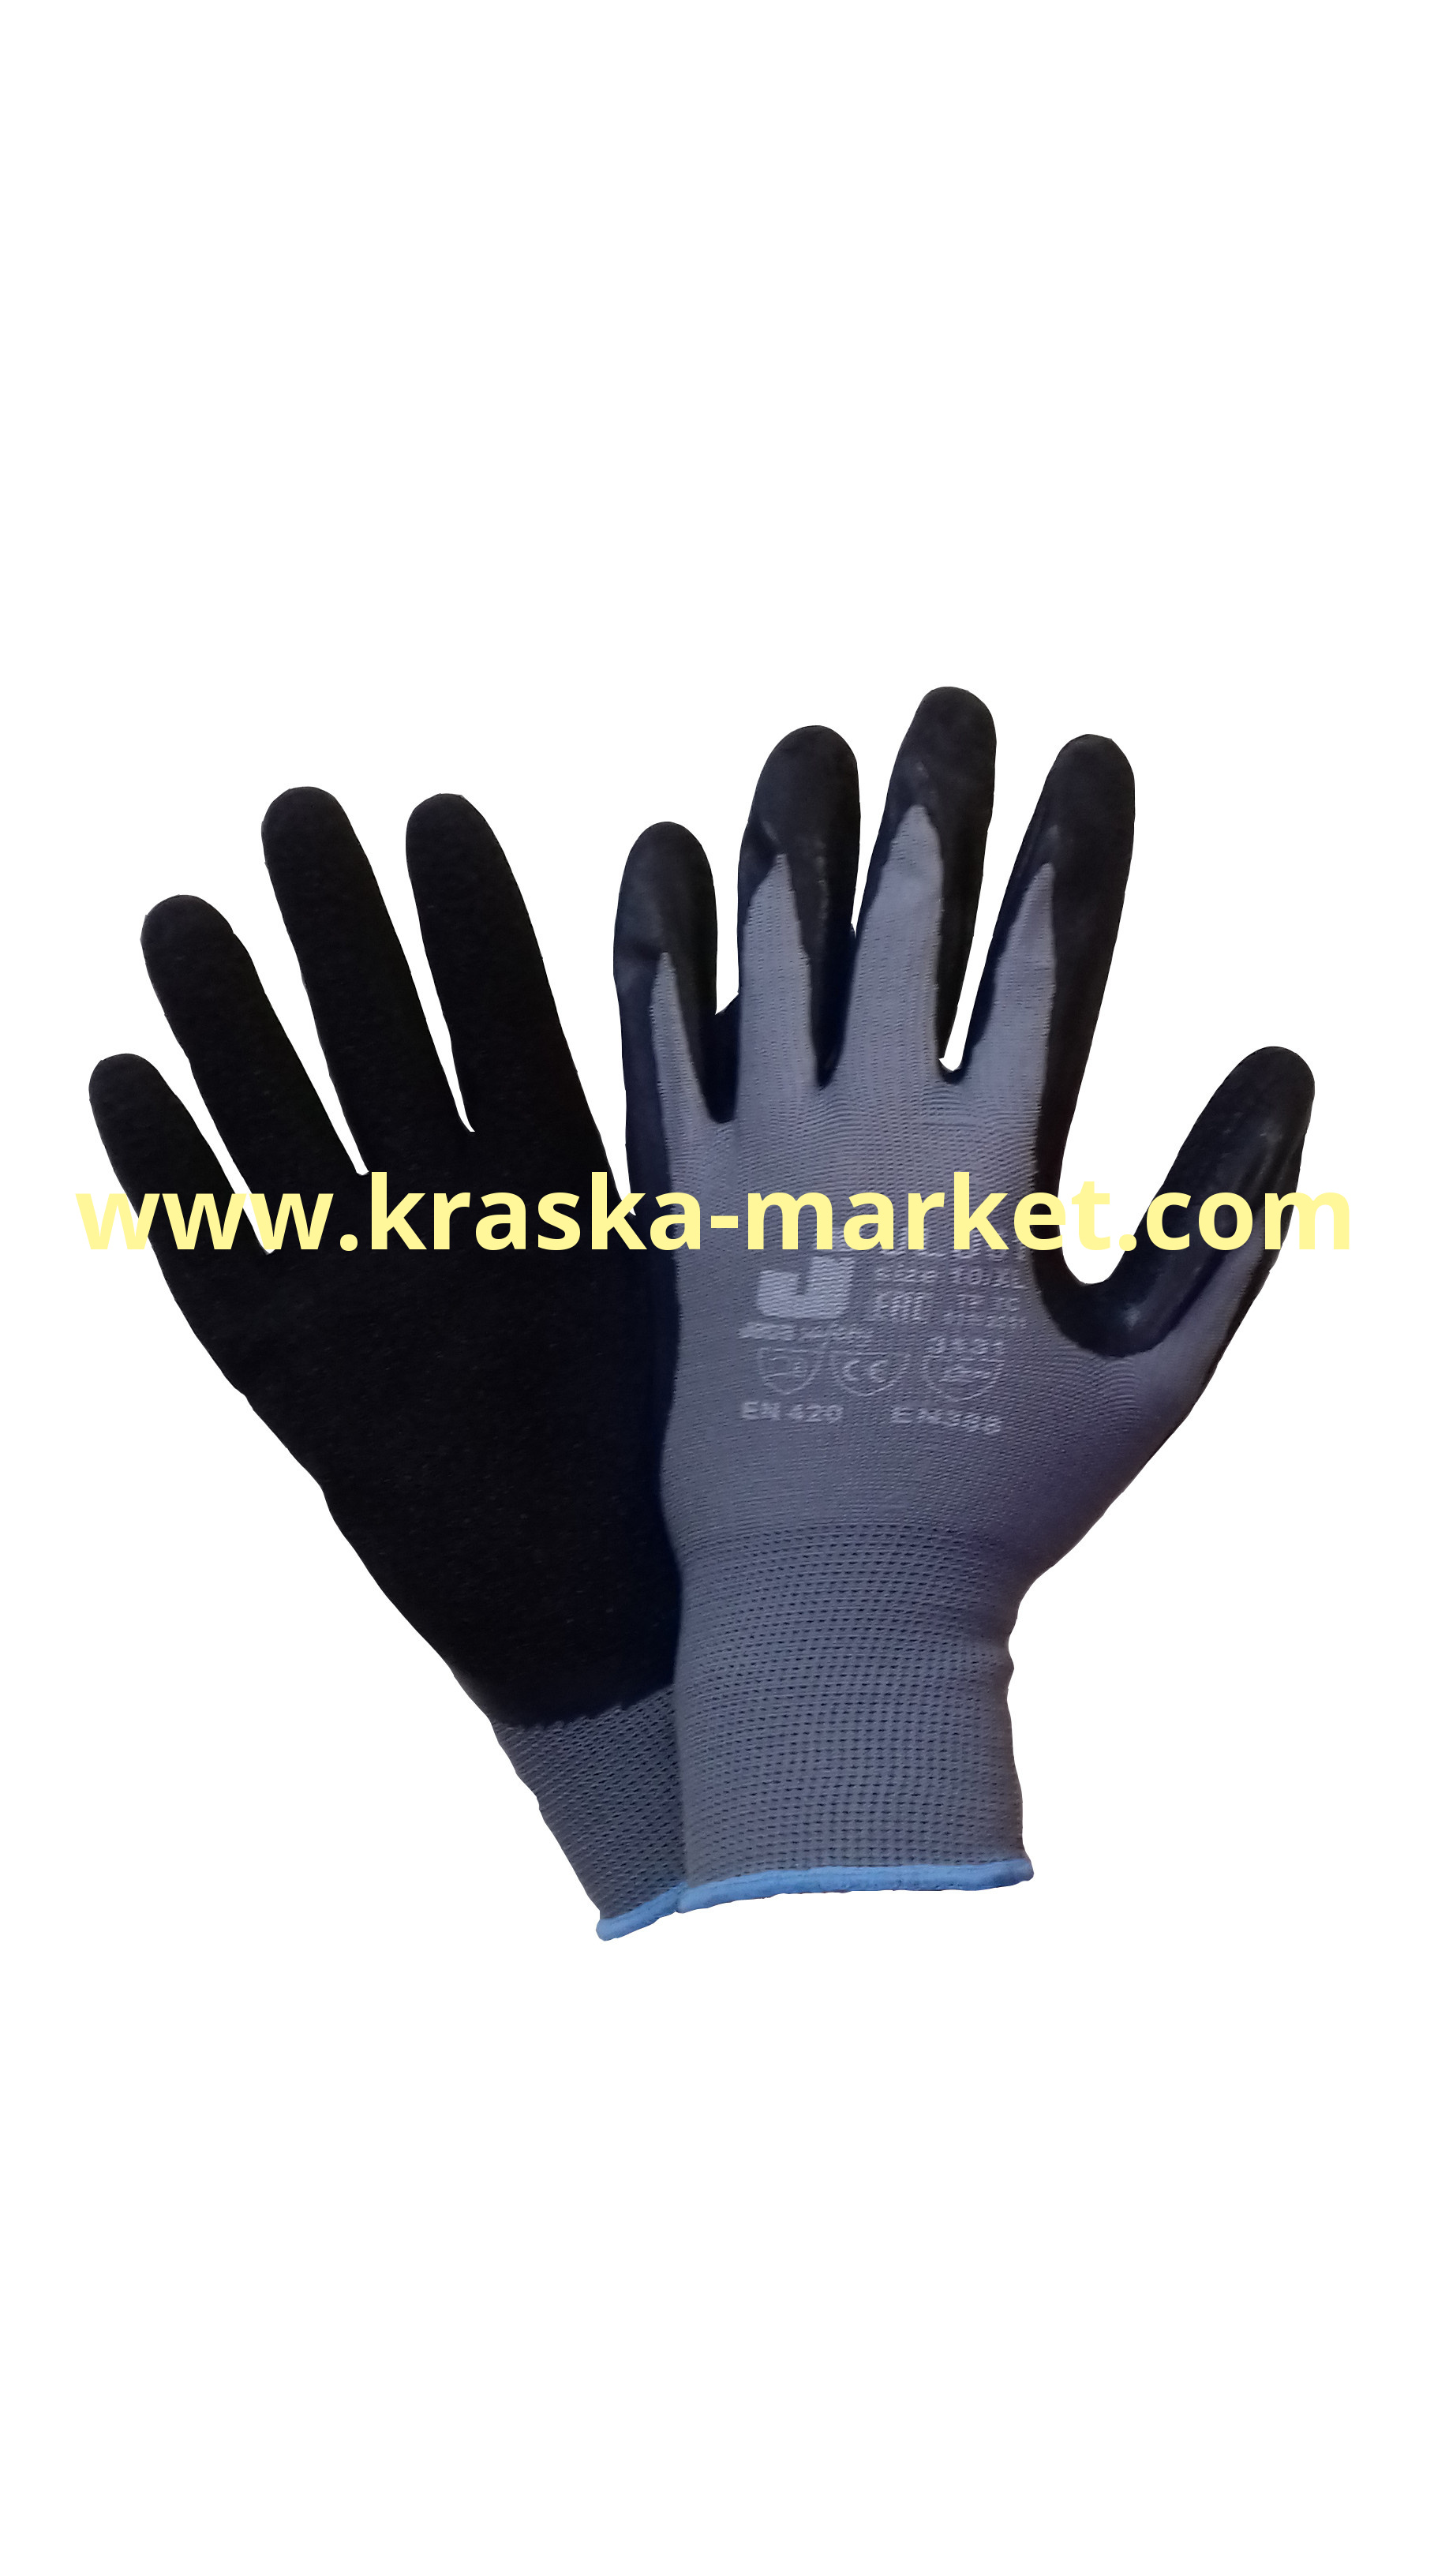 Защитные промышленные перчатки с рельефным латексным покрытием. Цвет: серый/черный. Размер: L. Торговая марка: JetaPro.